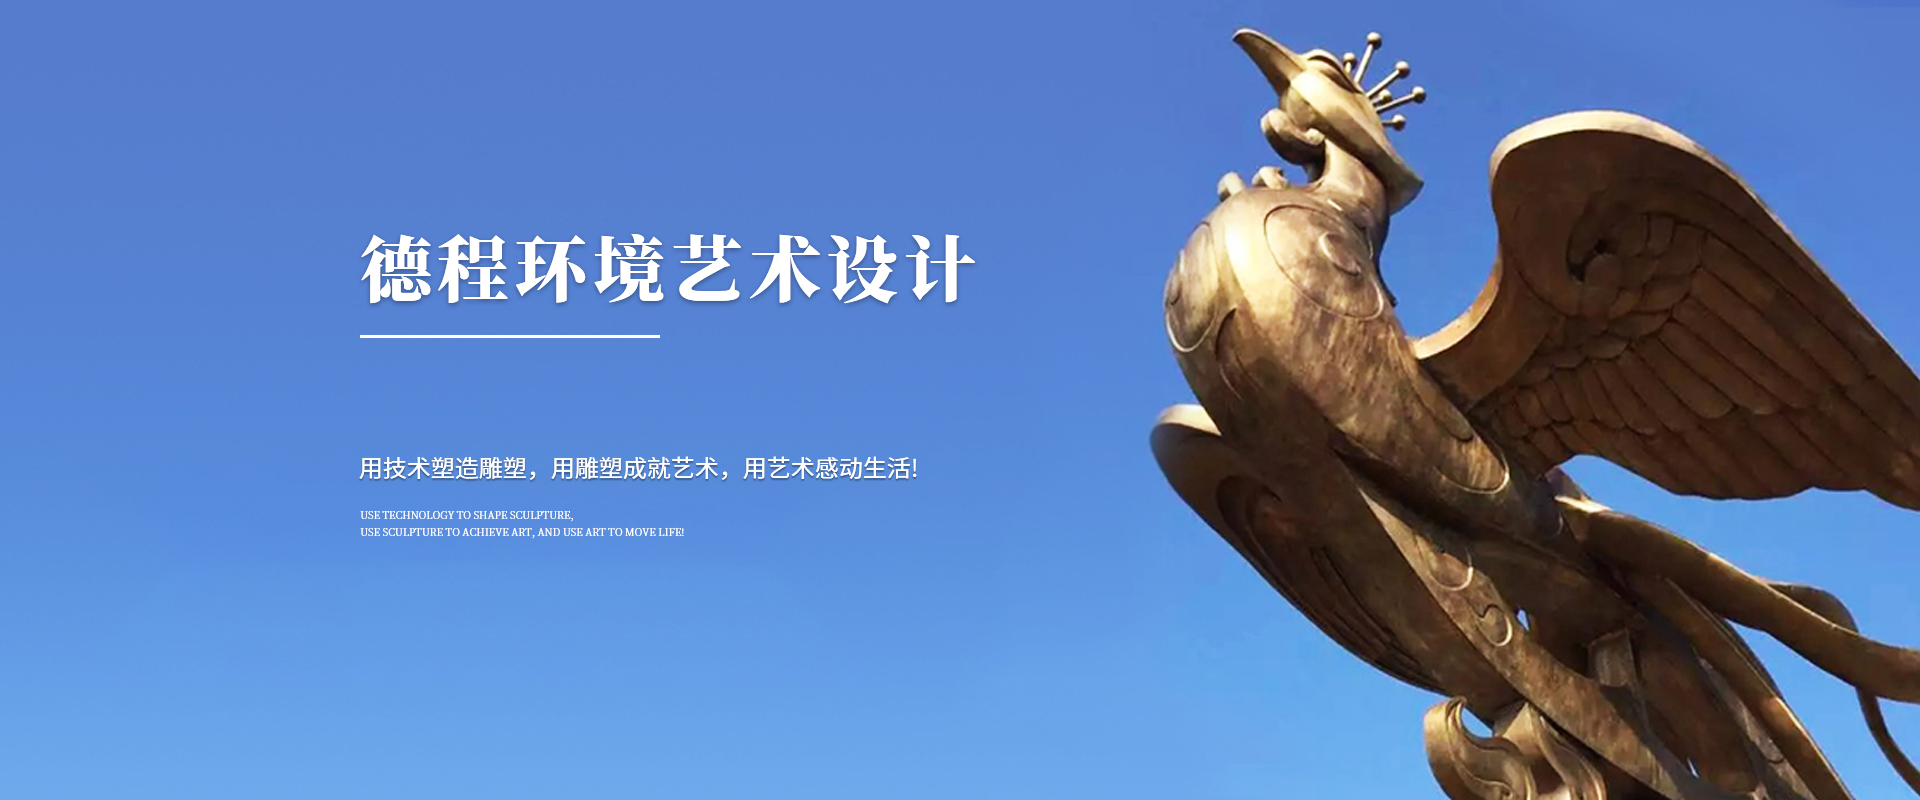 重慶雕塑公司